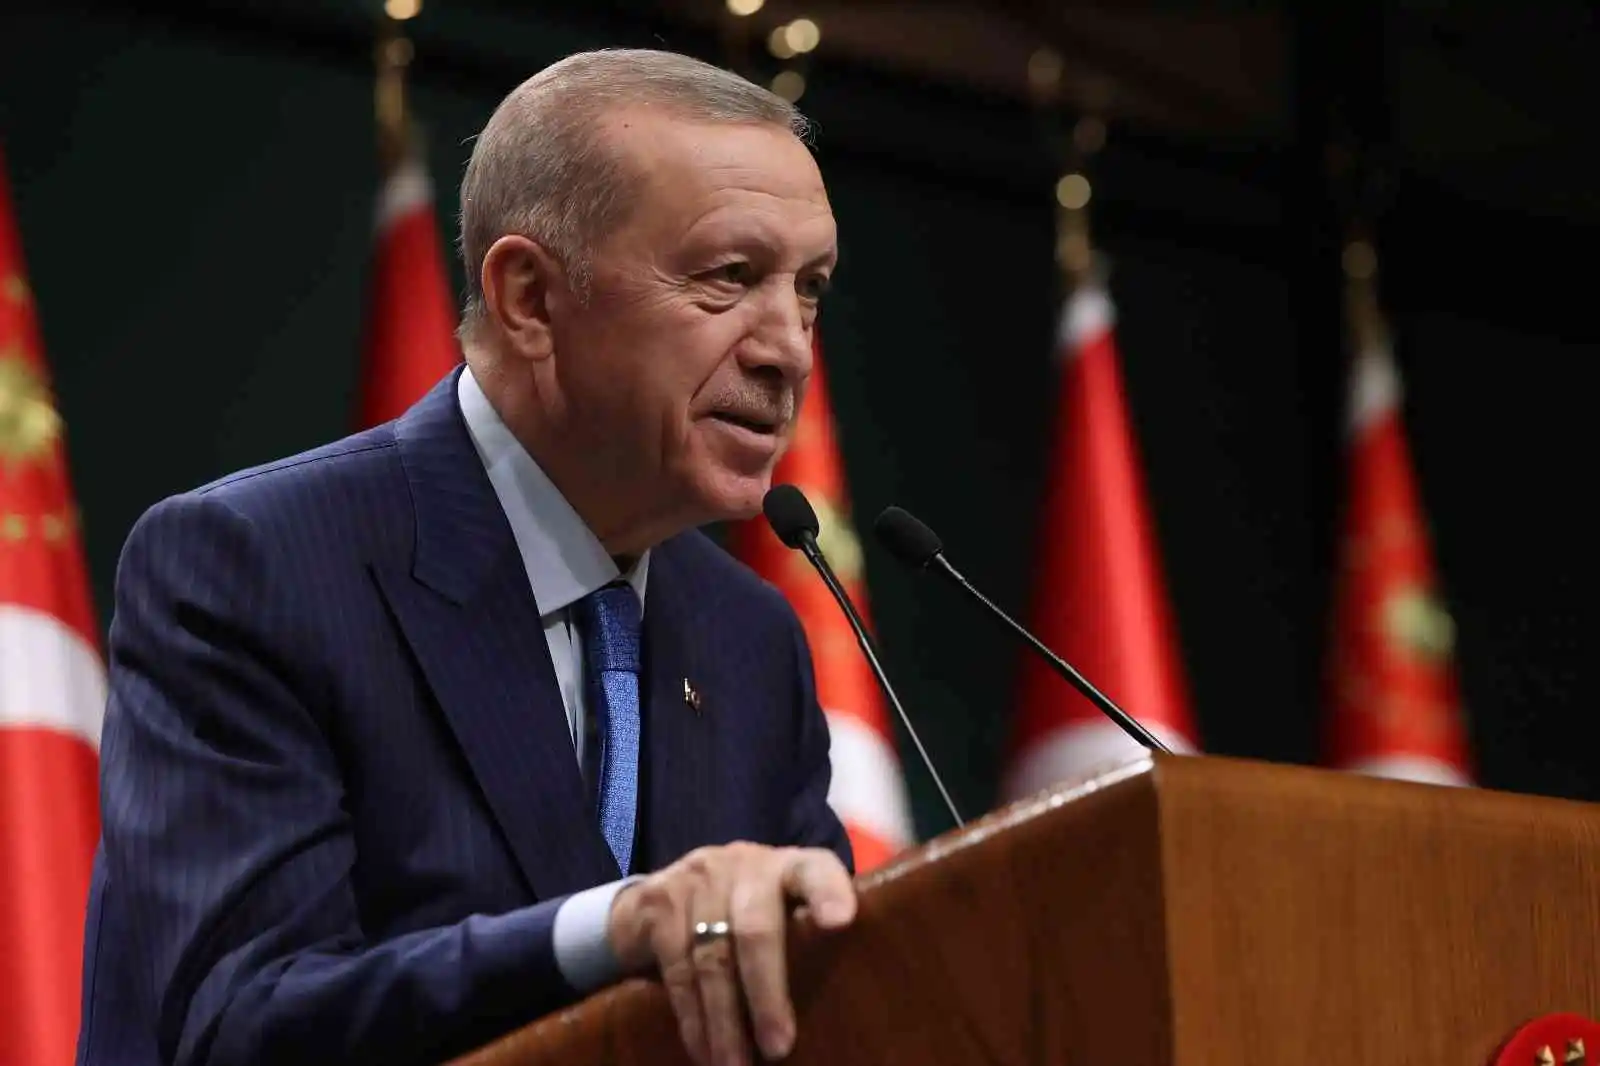 Cumhurbaşkanı Erdoğan: “14 Mayıs 2023 Pazar gününün her bakımdan seçim için en uygun tarih olduğunu gördük”
